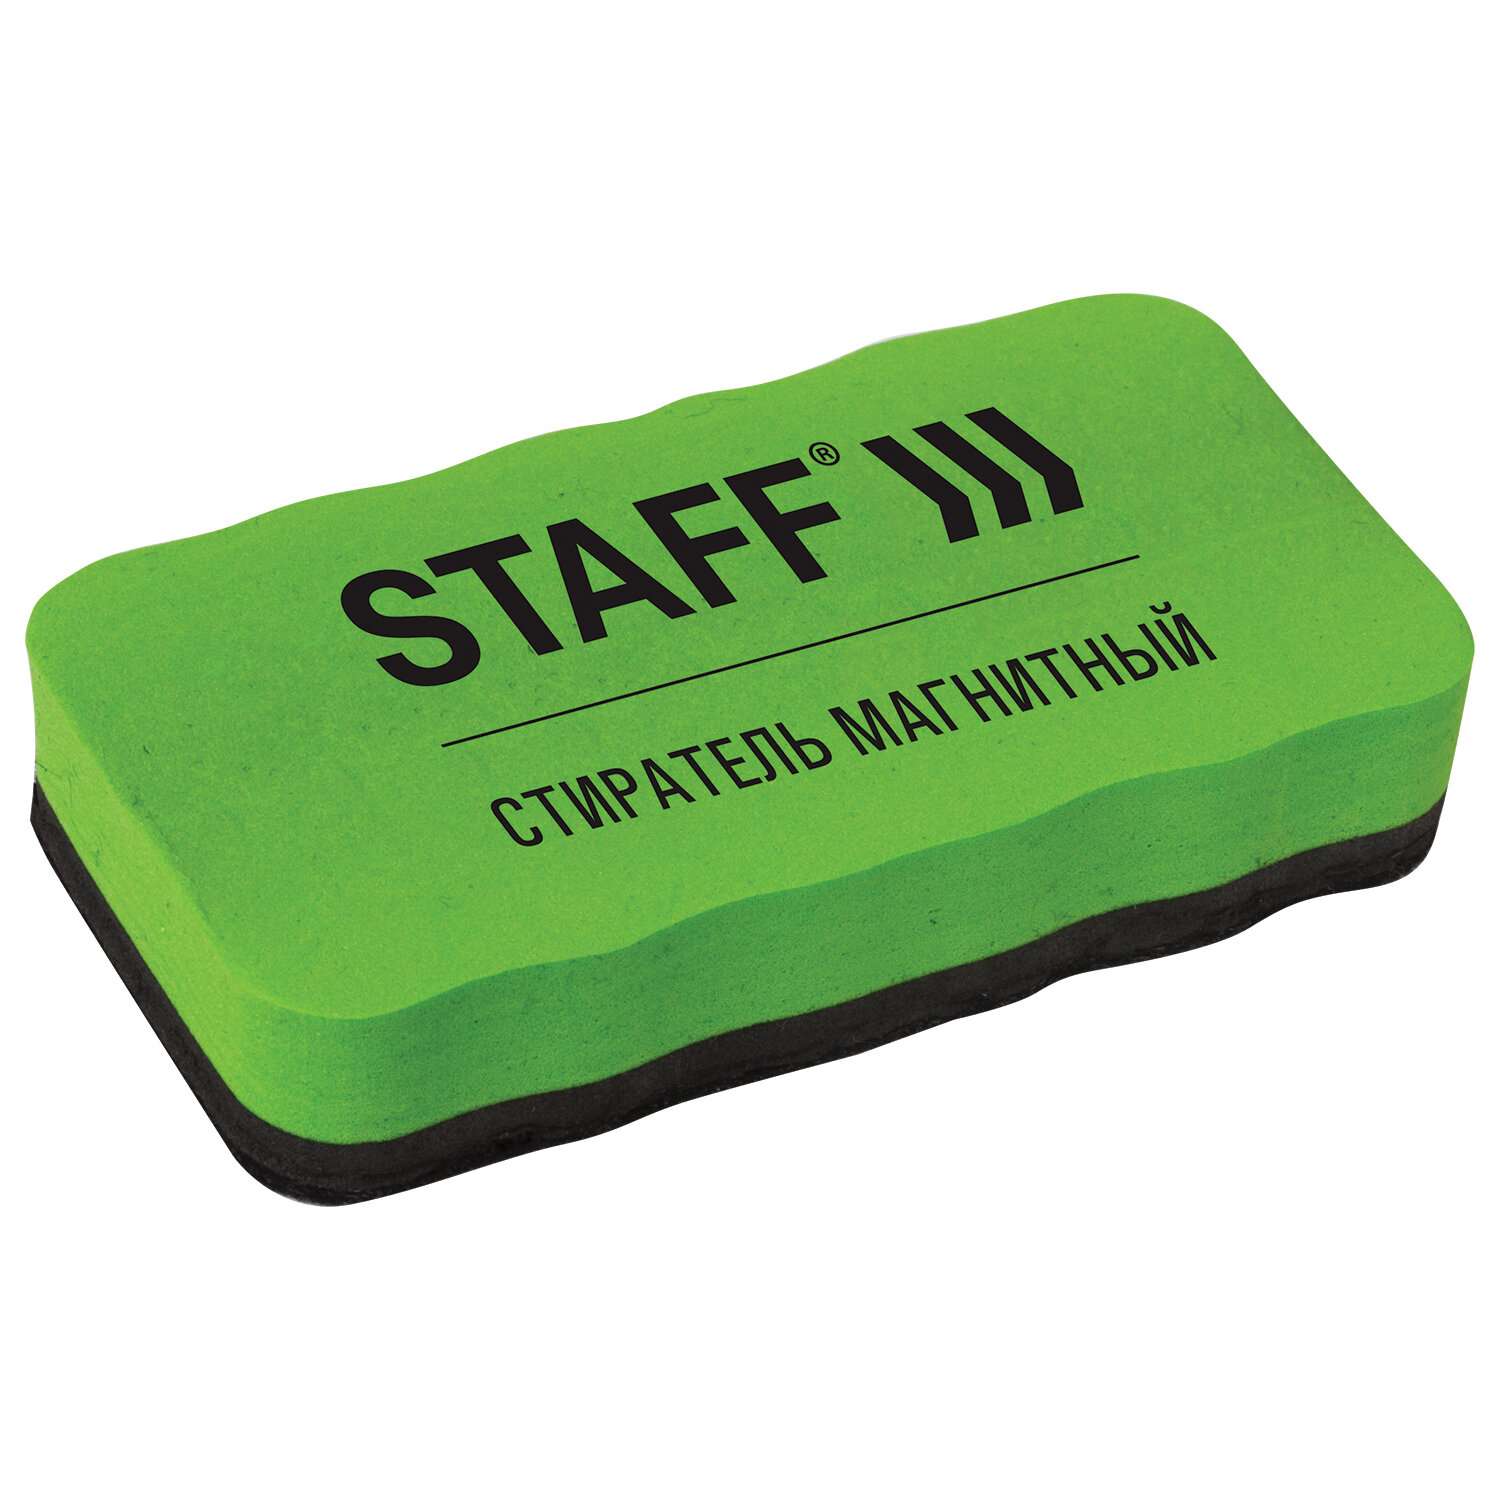 Стиратель маркера Staff магнитный для магнитно-маркерной доски - фото 2